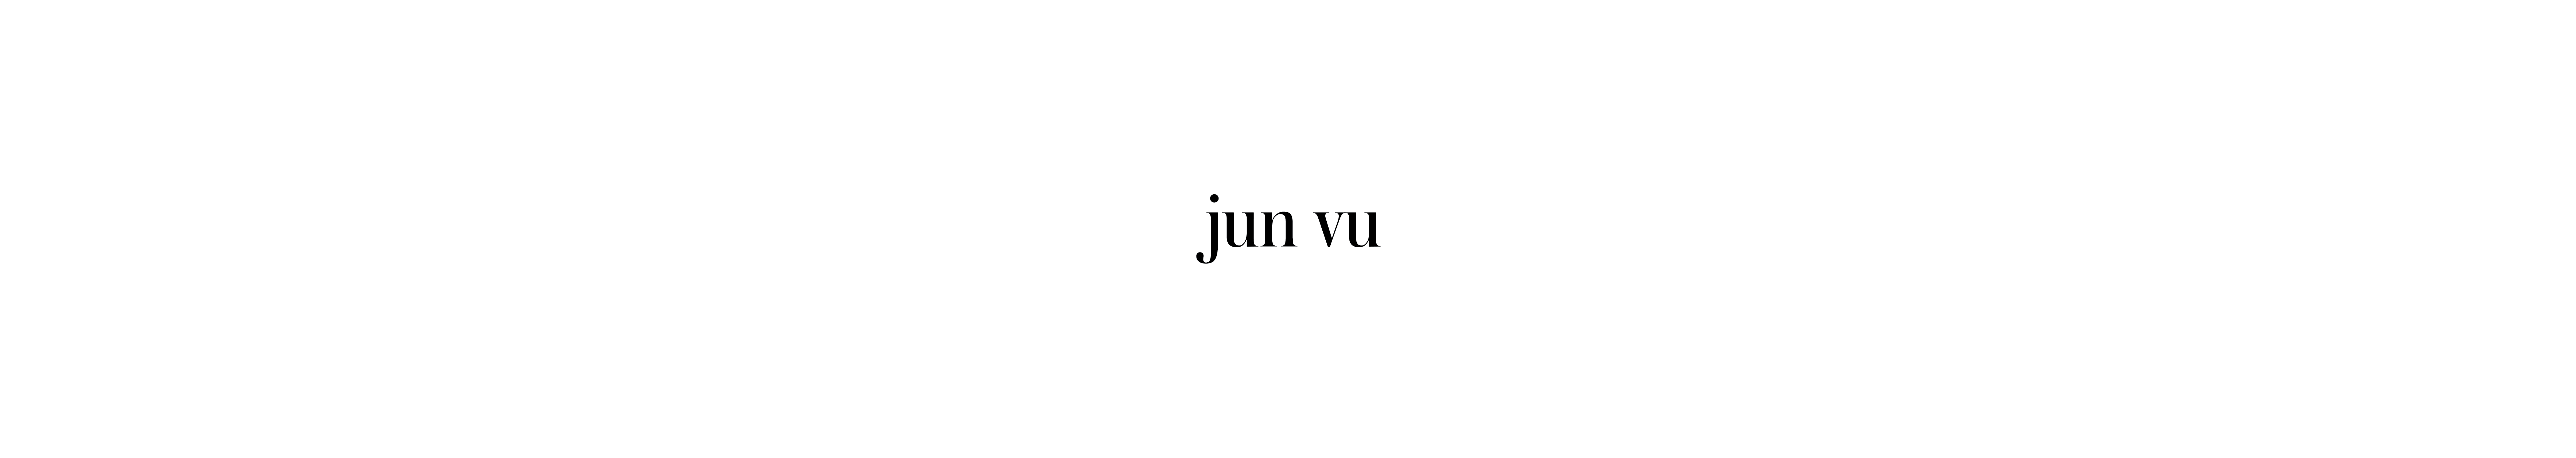 Jun Vu 的个人资料横幅